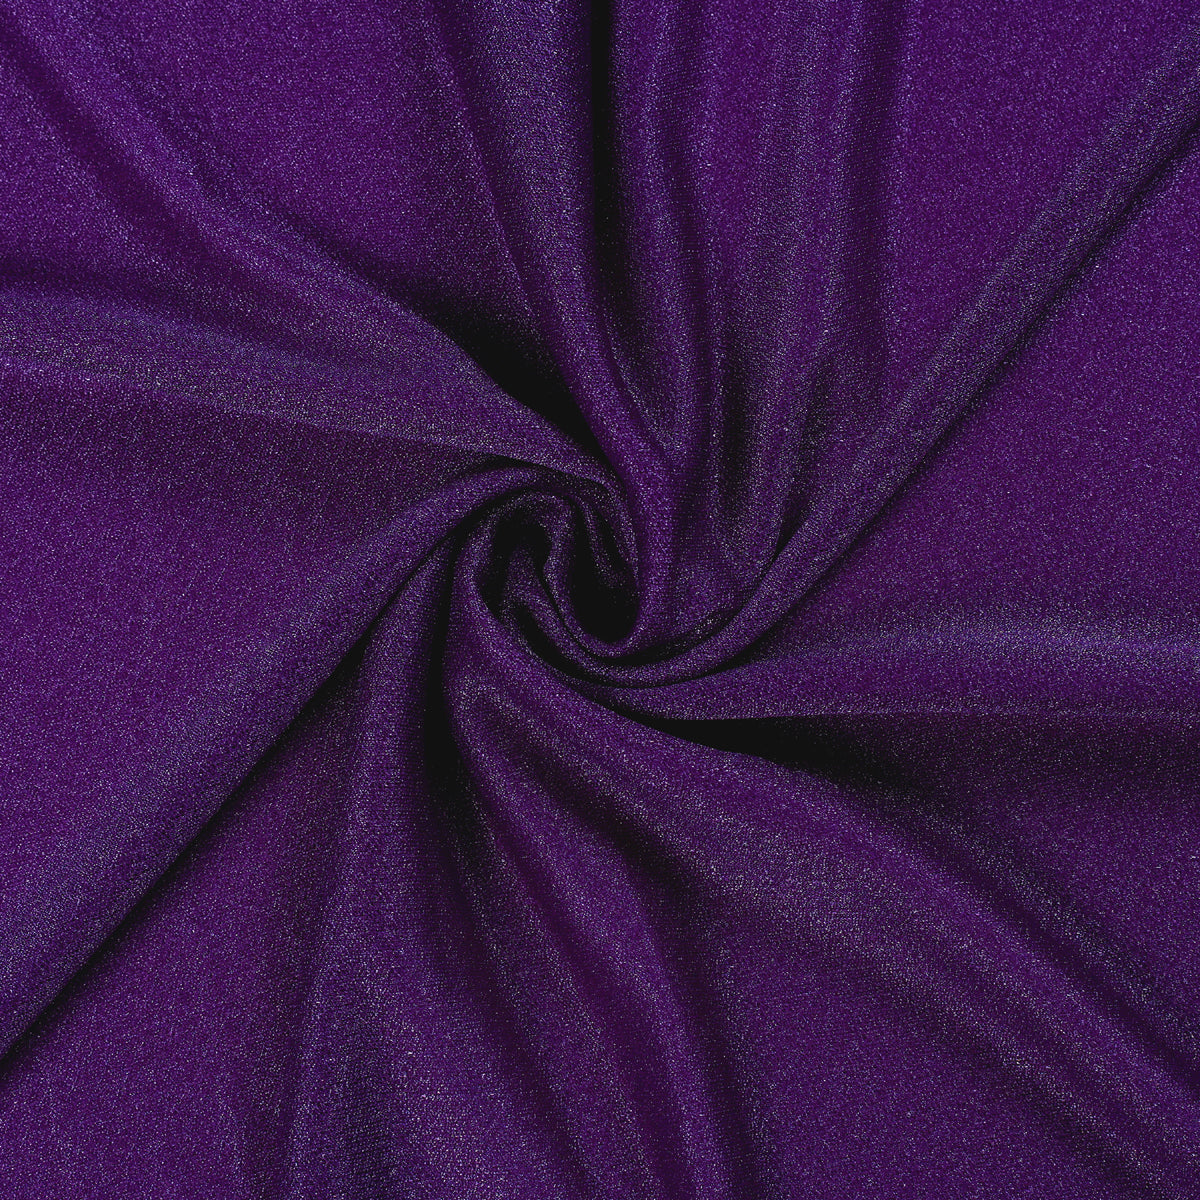 Purple,9e723ef1-9abb-469f-9db2-f30a7f36c2da